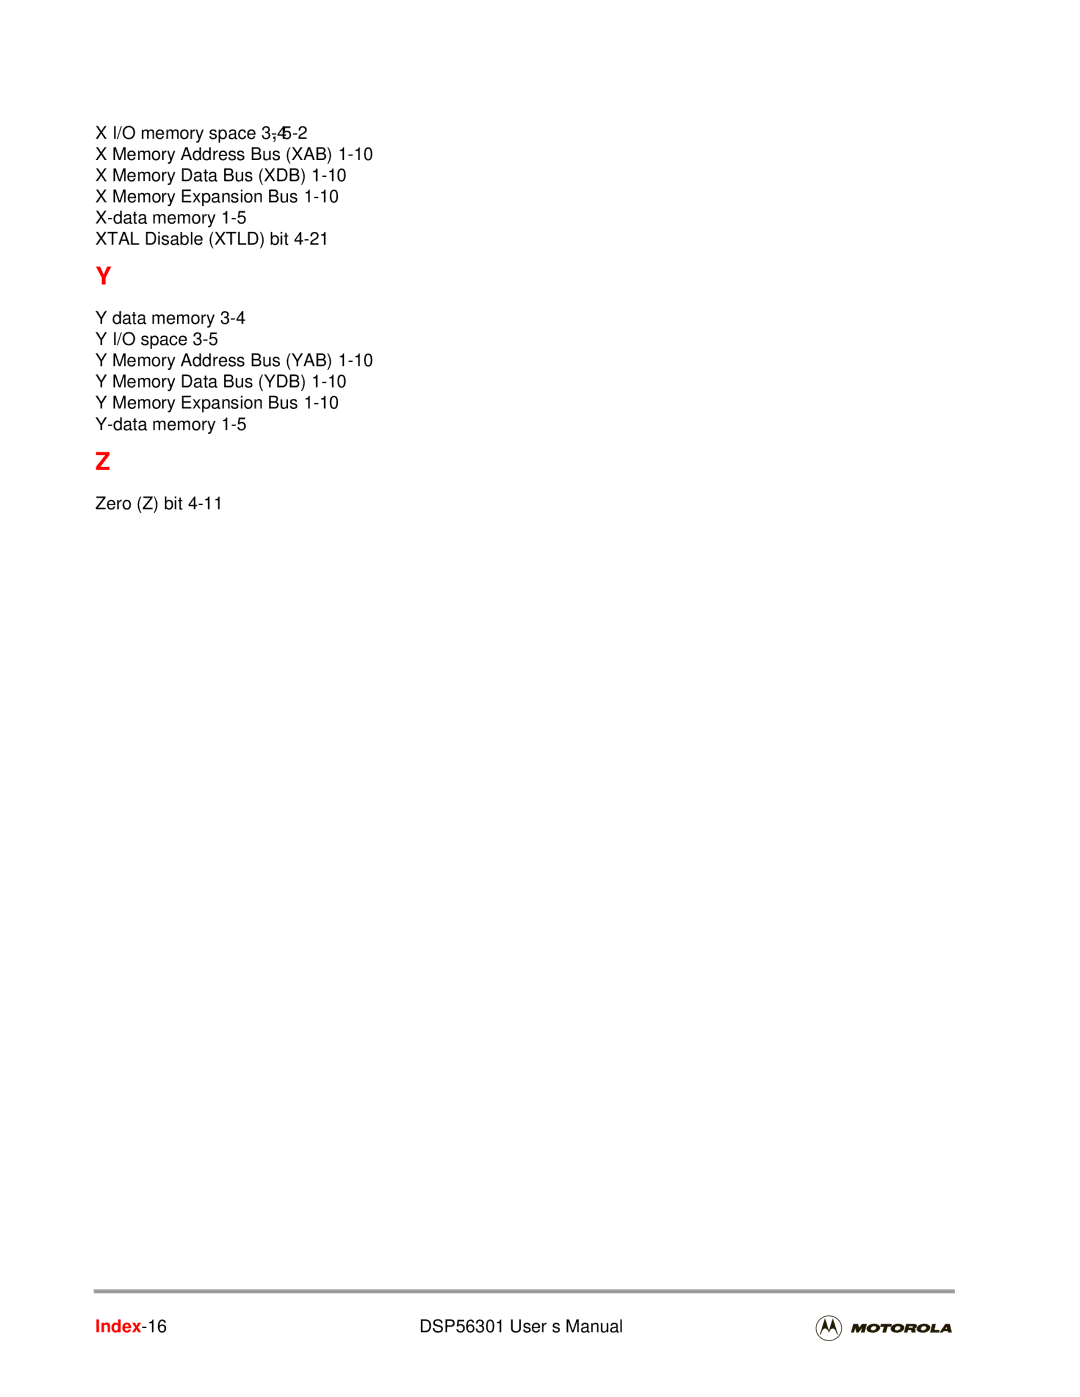 Motorola user manual Index-16 DSP56301 User’s Manual 